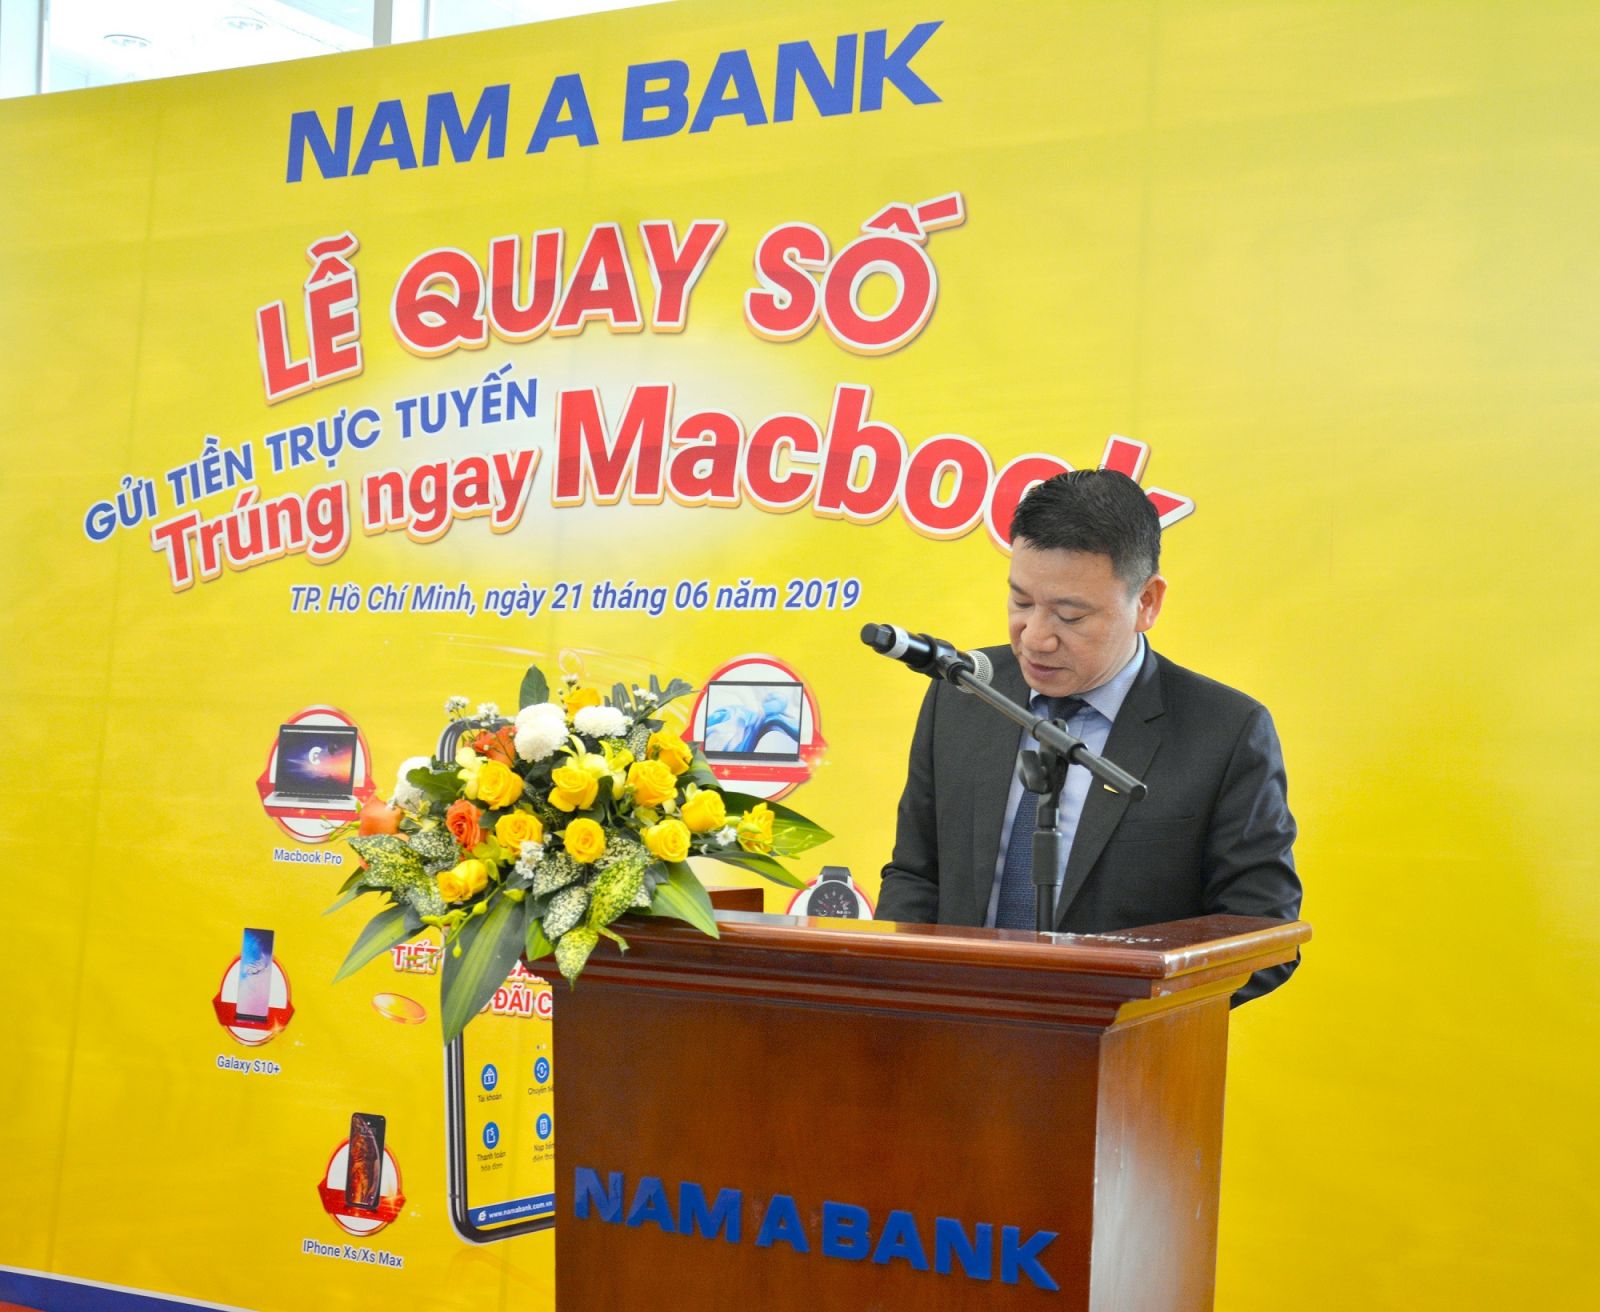 Ông Hoàng Việt Cường – Giám đốc Khối kinh doanh Nam A Bank phát biểu tại  Lễ quay số.